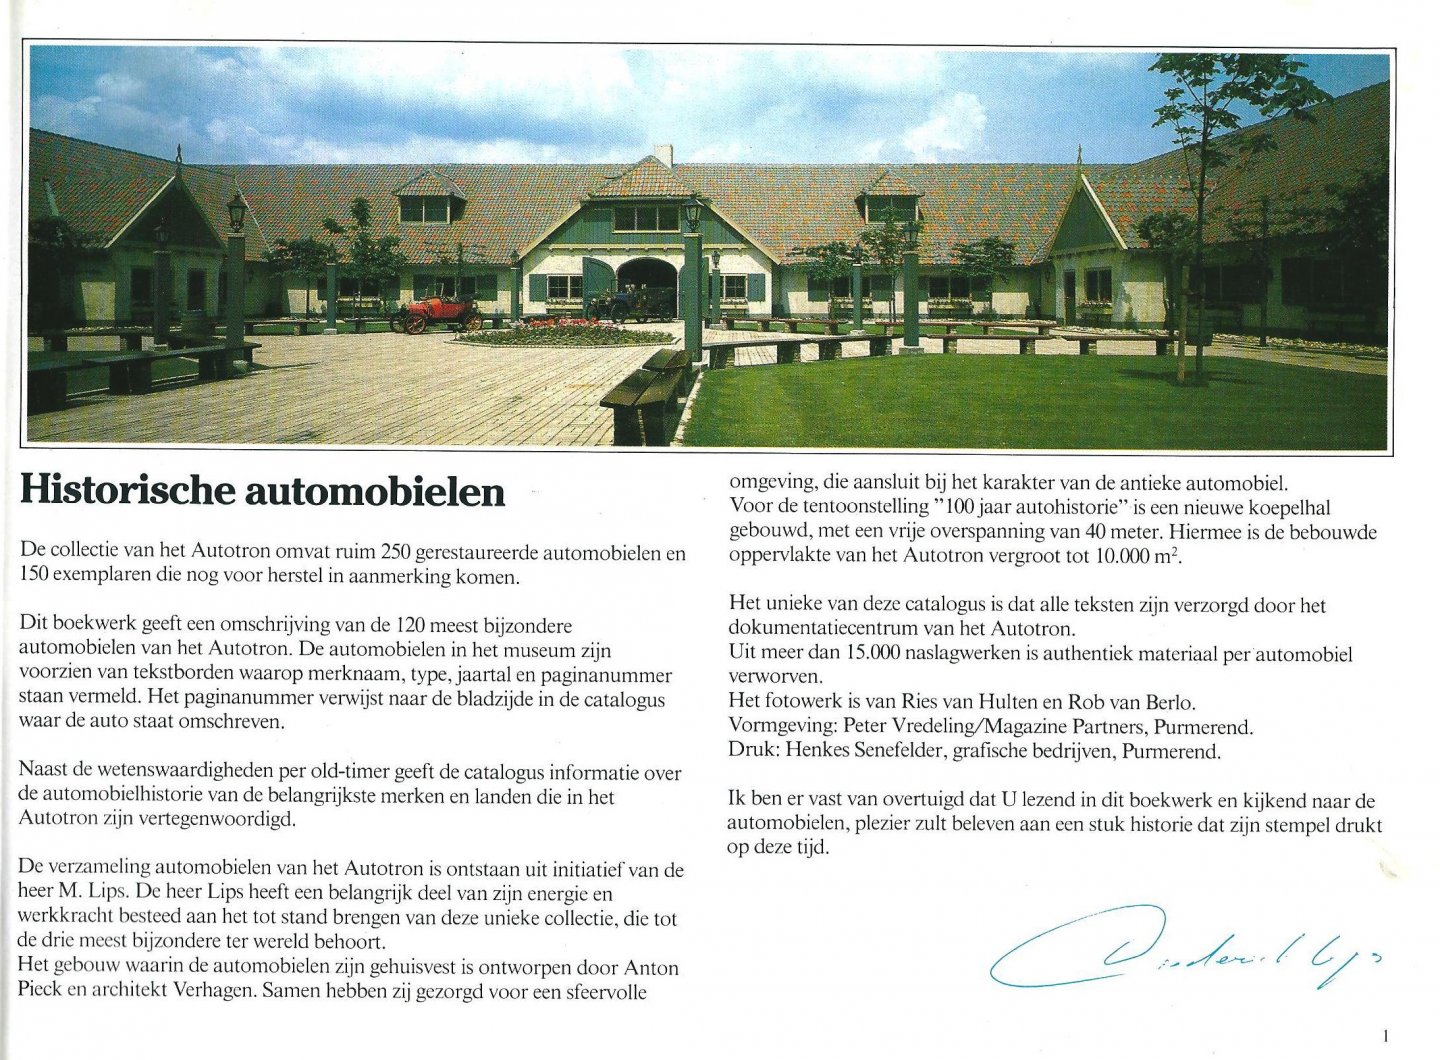 Autotron Documentatiecentrum - Autotron : historische automobielen / fotowerk Ries van Hulten en Rob van Berlo